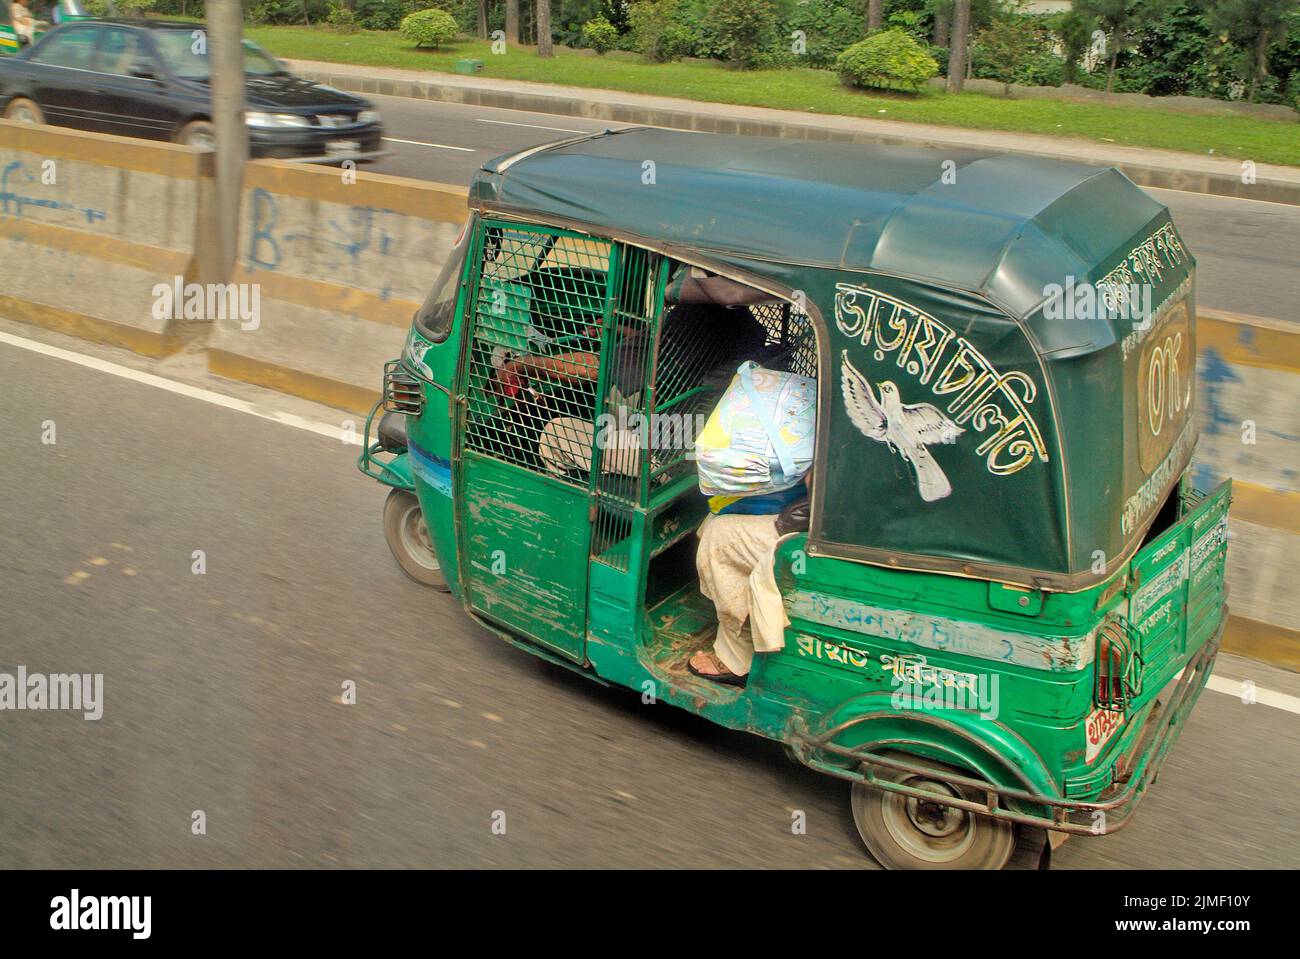 Dhaka, Bangladesh - 17 septembre 2007 : pousse-pousse motorisé appelé Tuk-Tuk, mode de transport habituel dans la capitale Banque D'Images